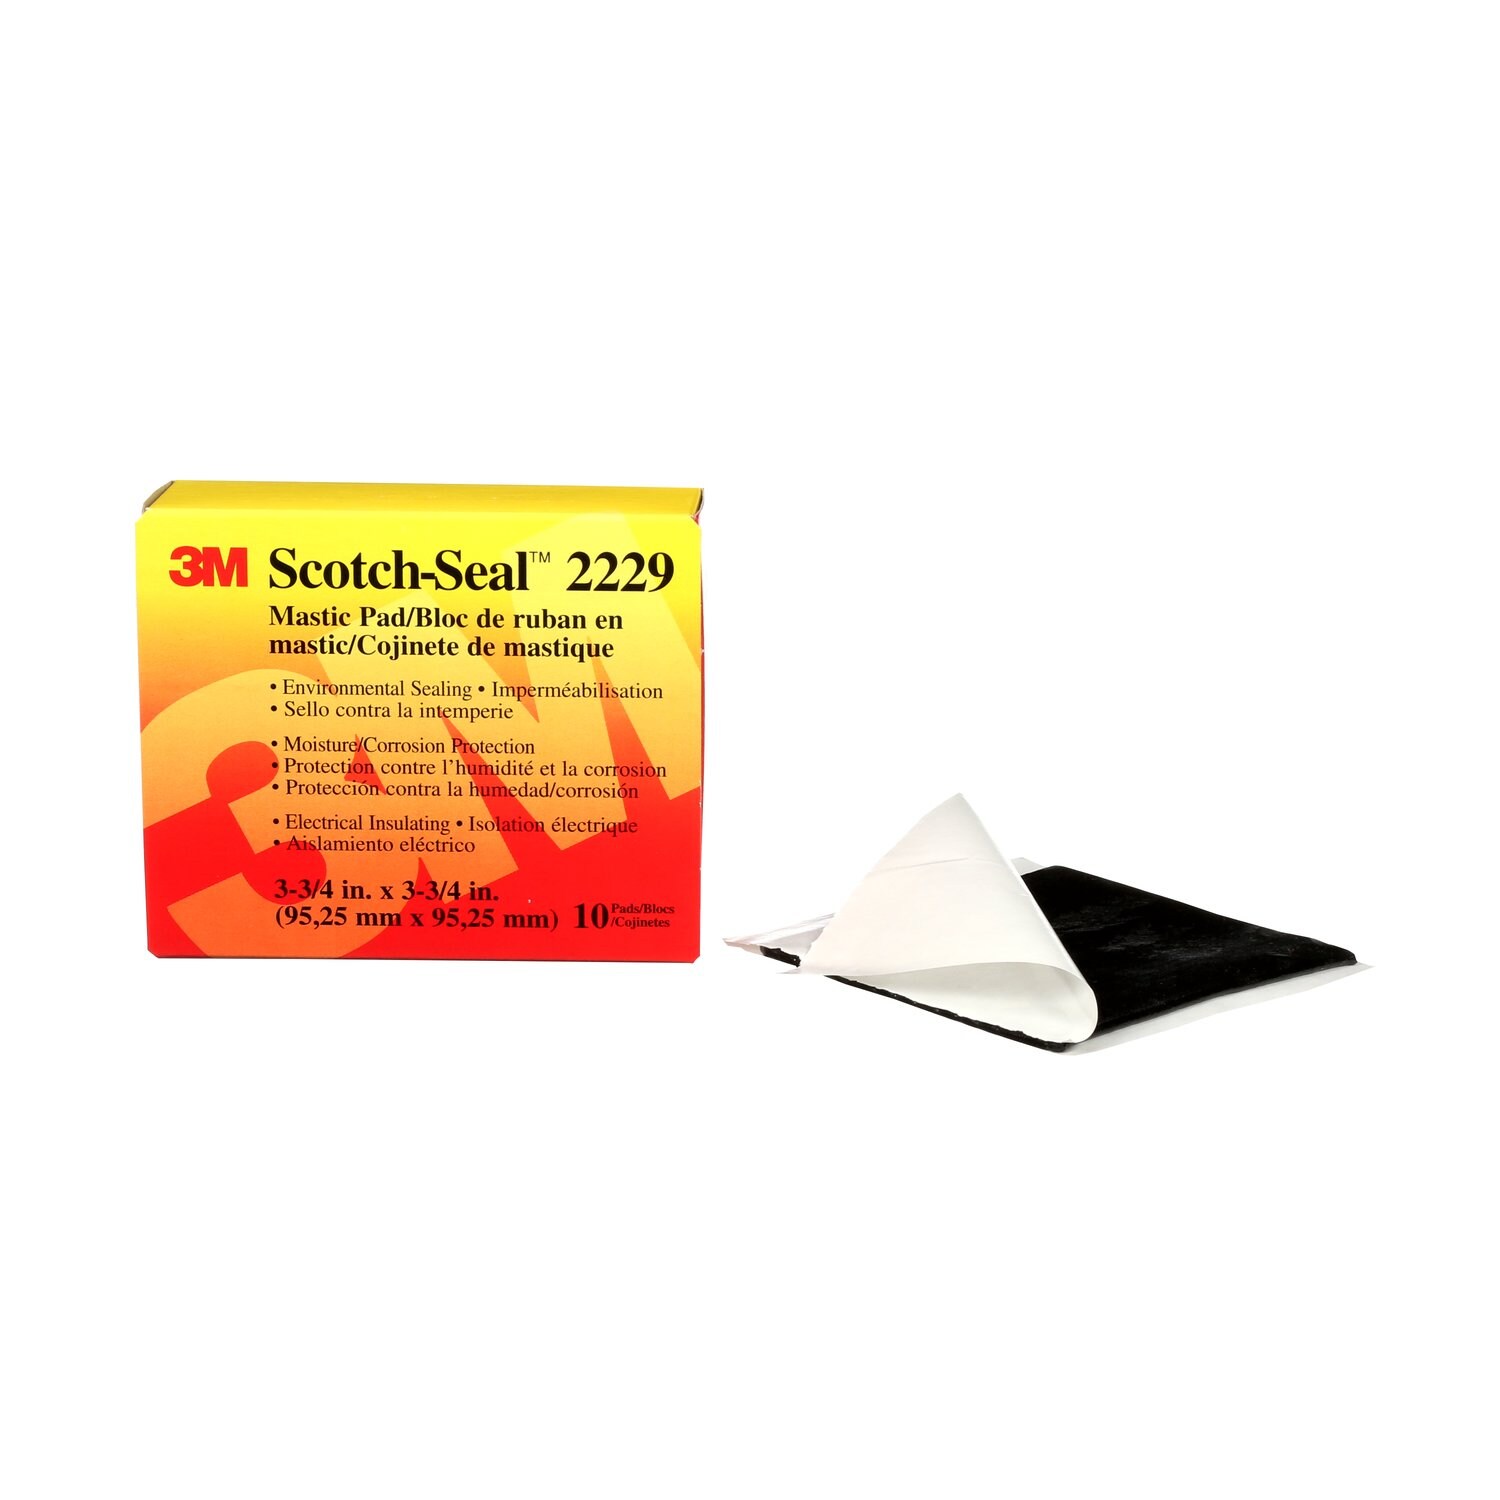 7000132526 - 3M Scotch-Seal Mastic Tape Compound 2229, 3-3/4 in x 3-3/4 in, Black,
10 pads/carton, 40 pads/Case